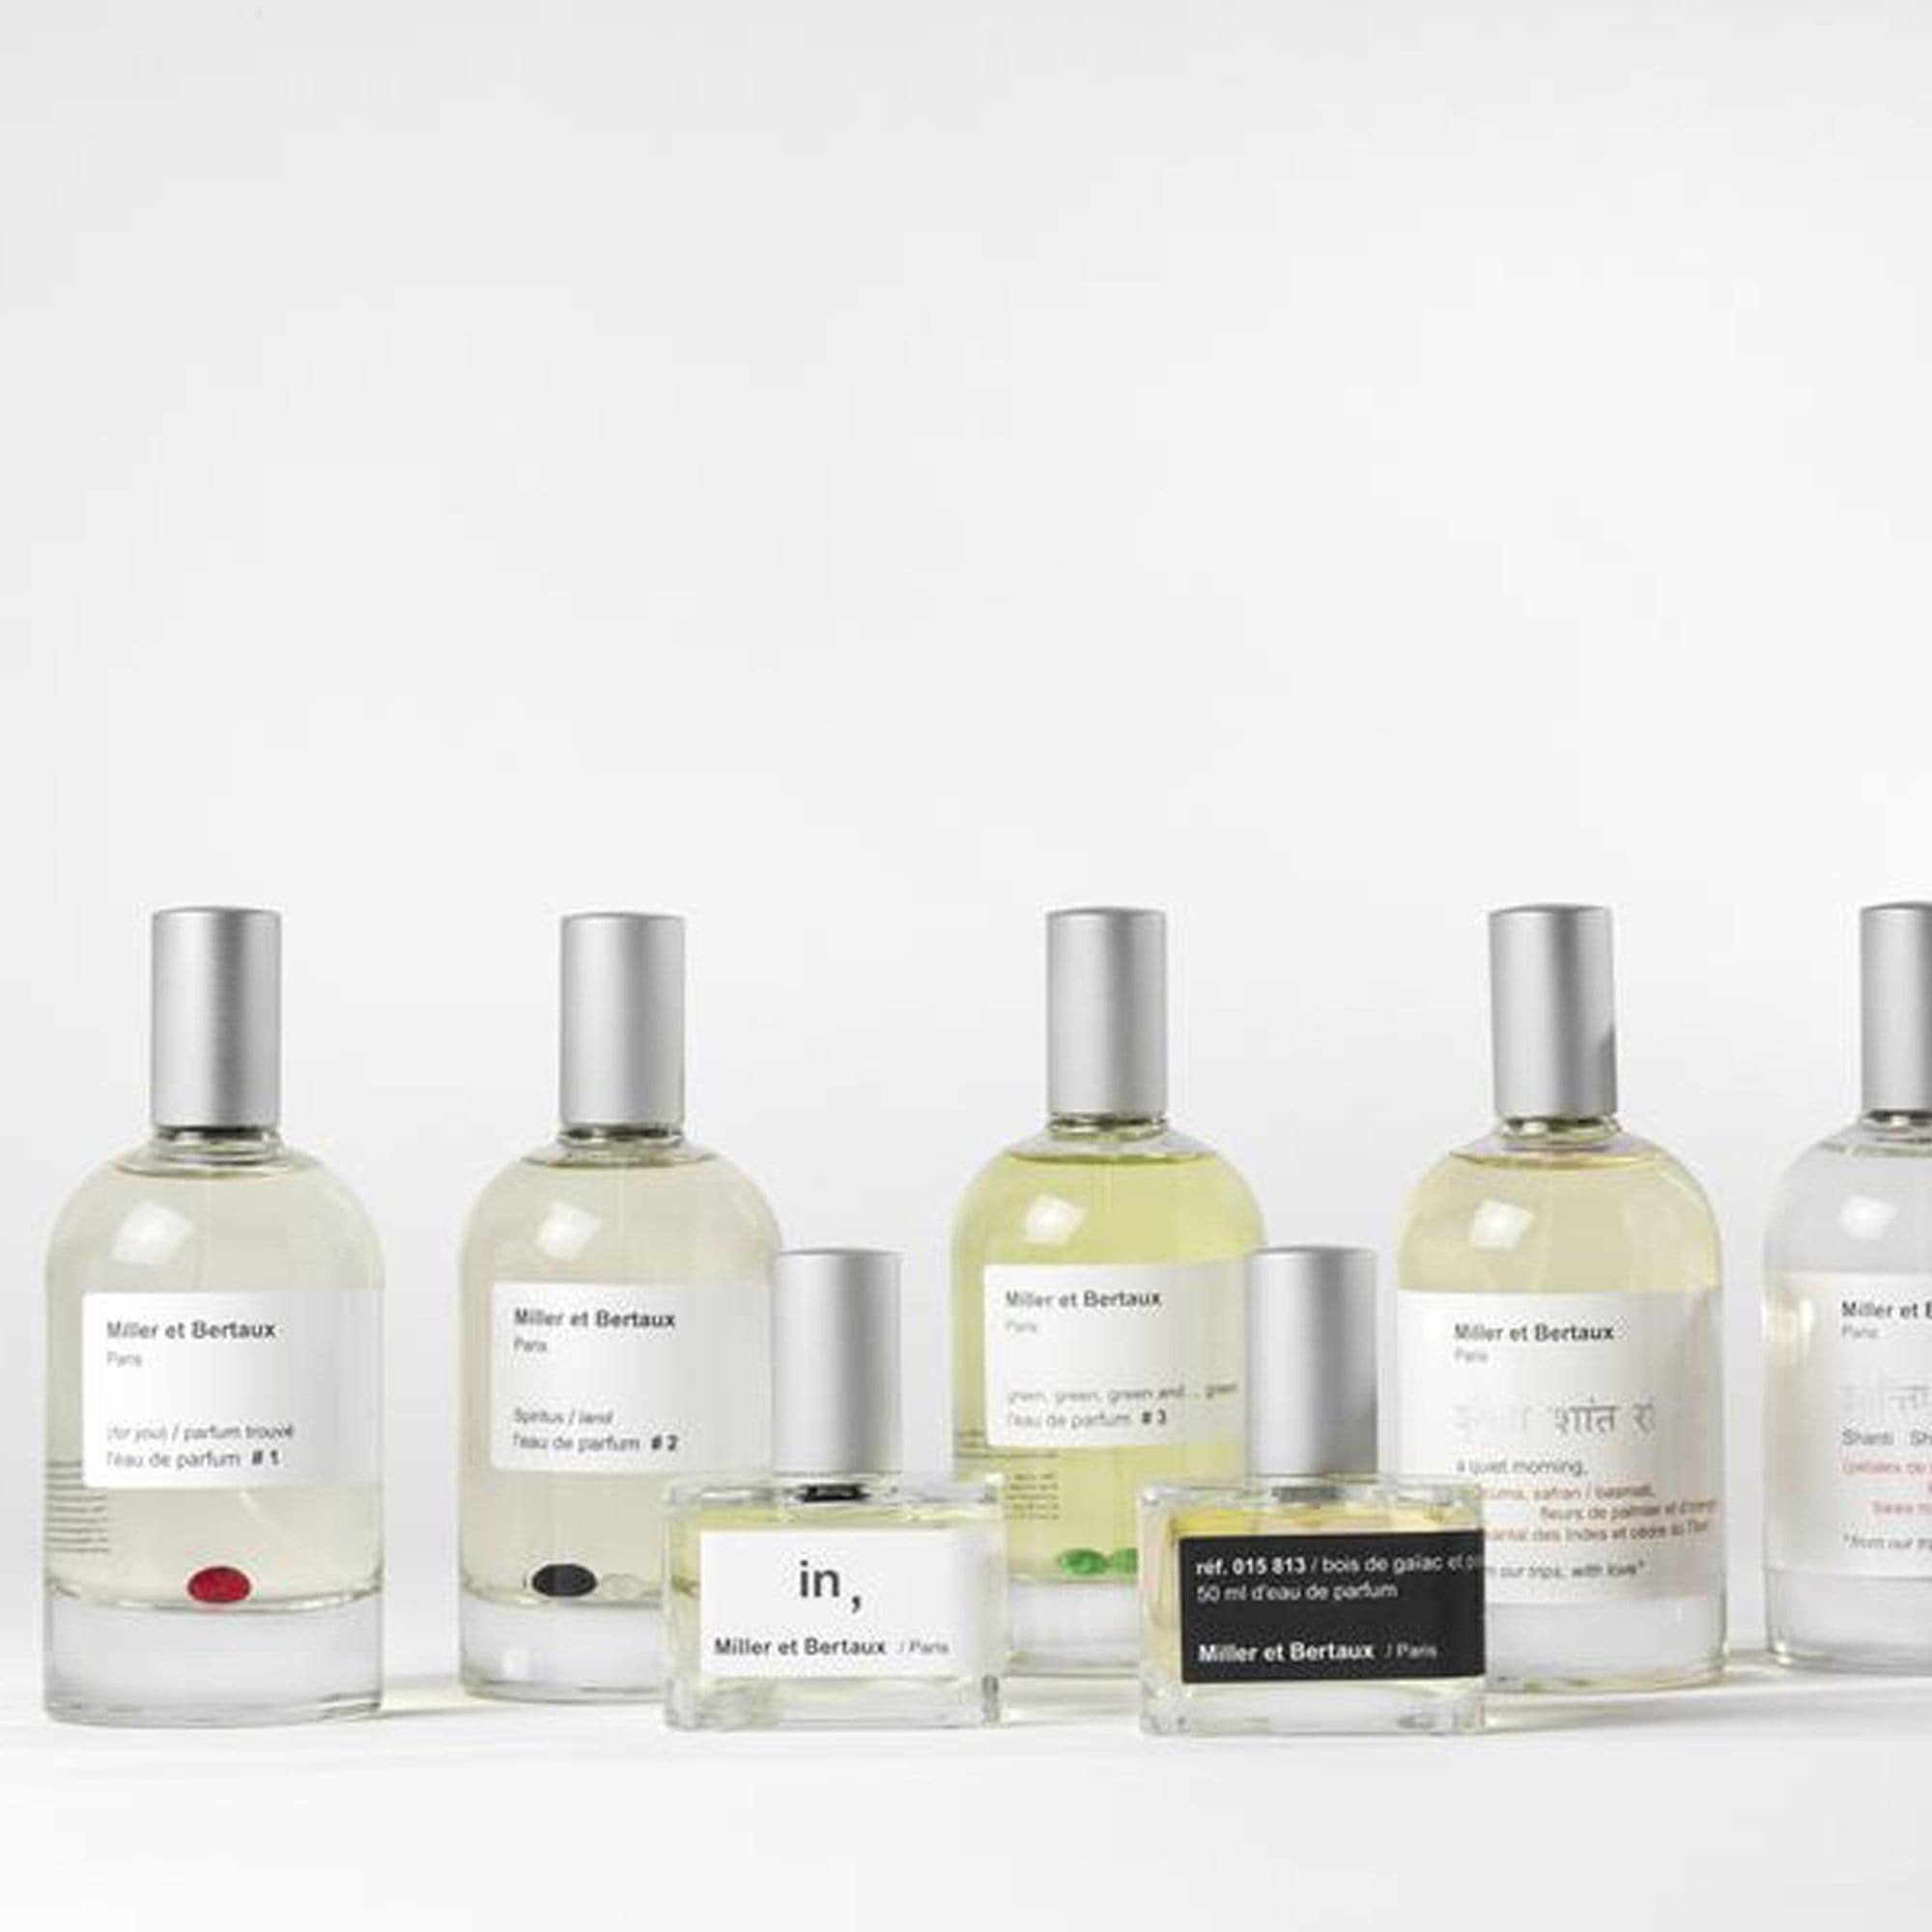 Miller et Bertaux best-sellers Perfume sample packs